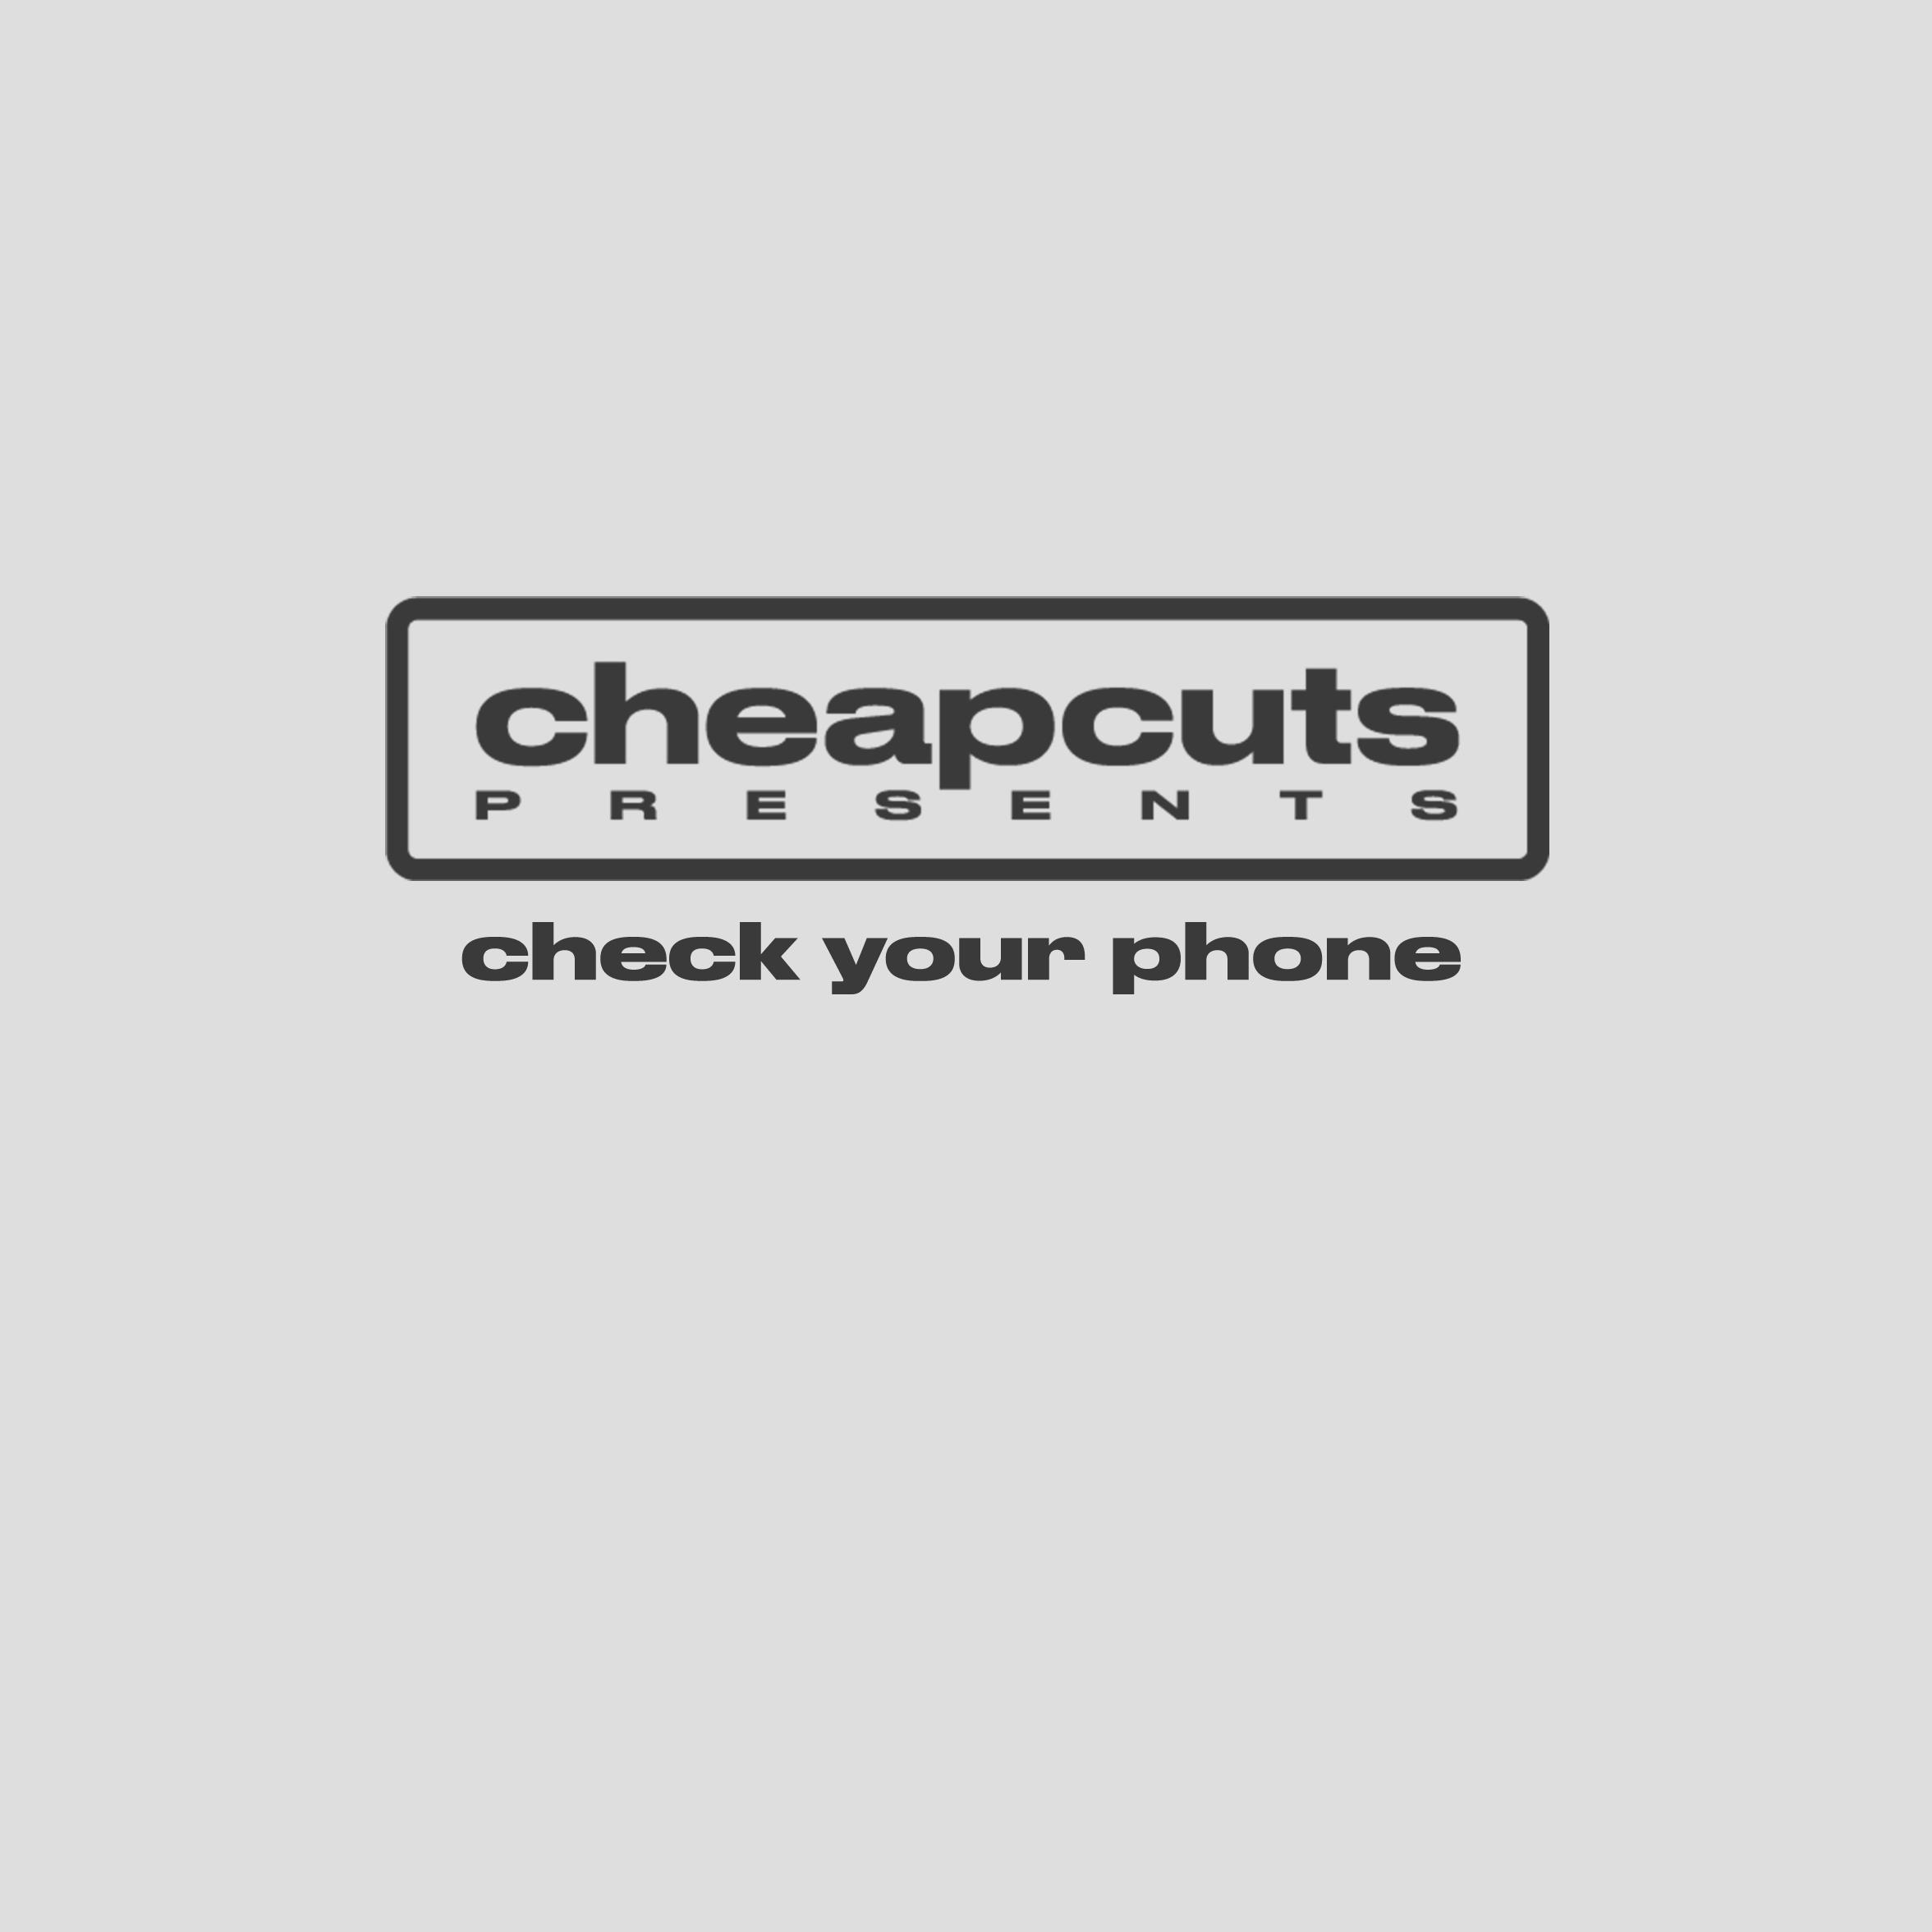 Cheap Cuts - Check Ton Phone